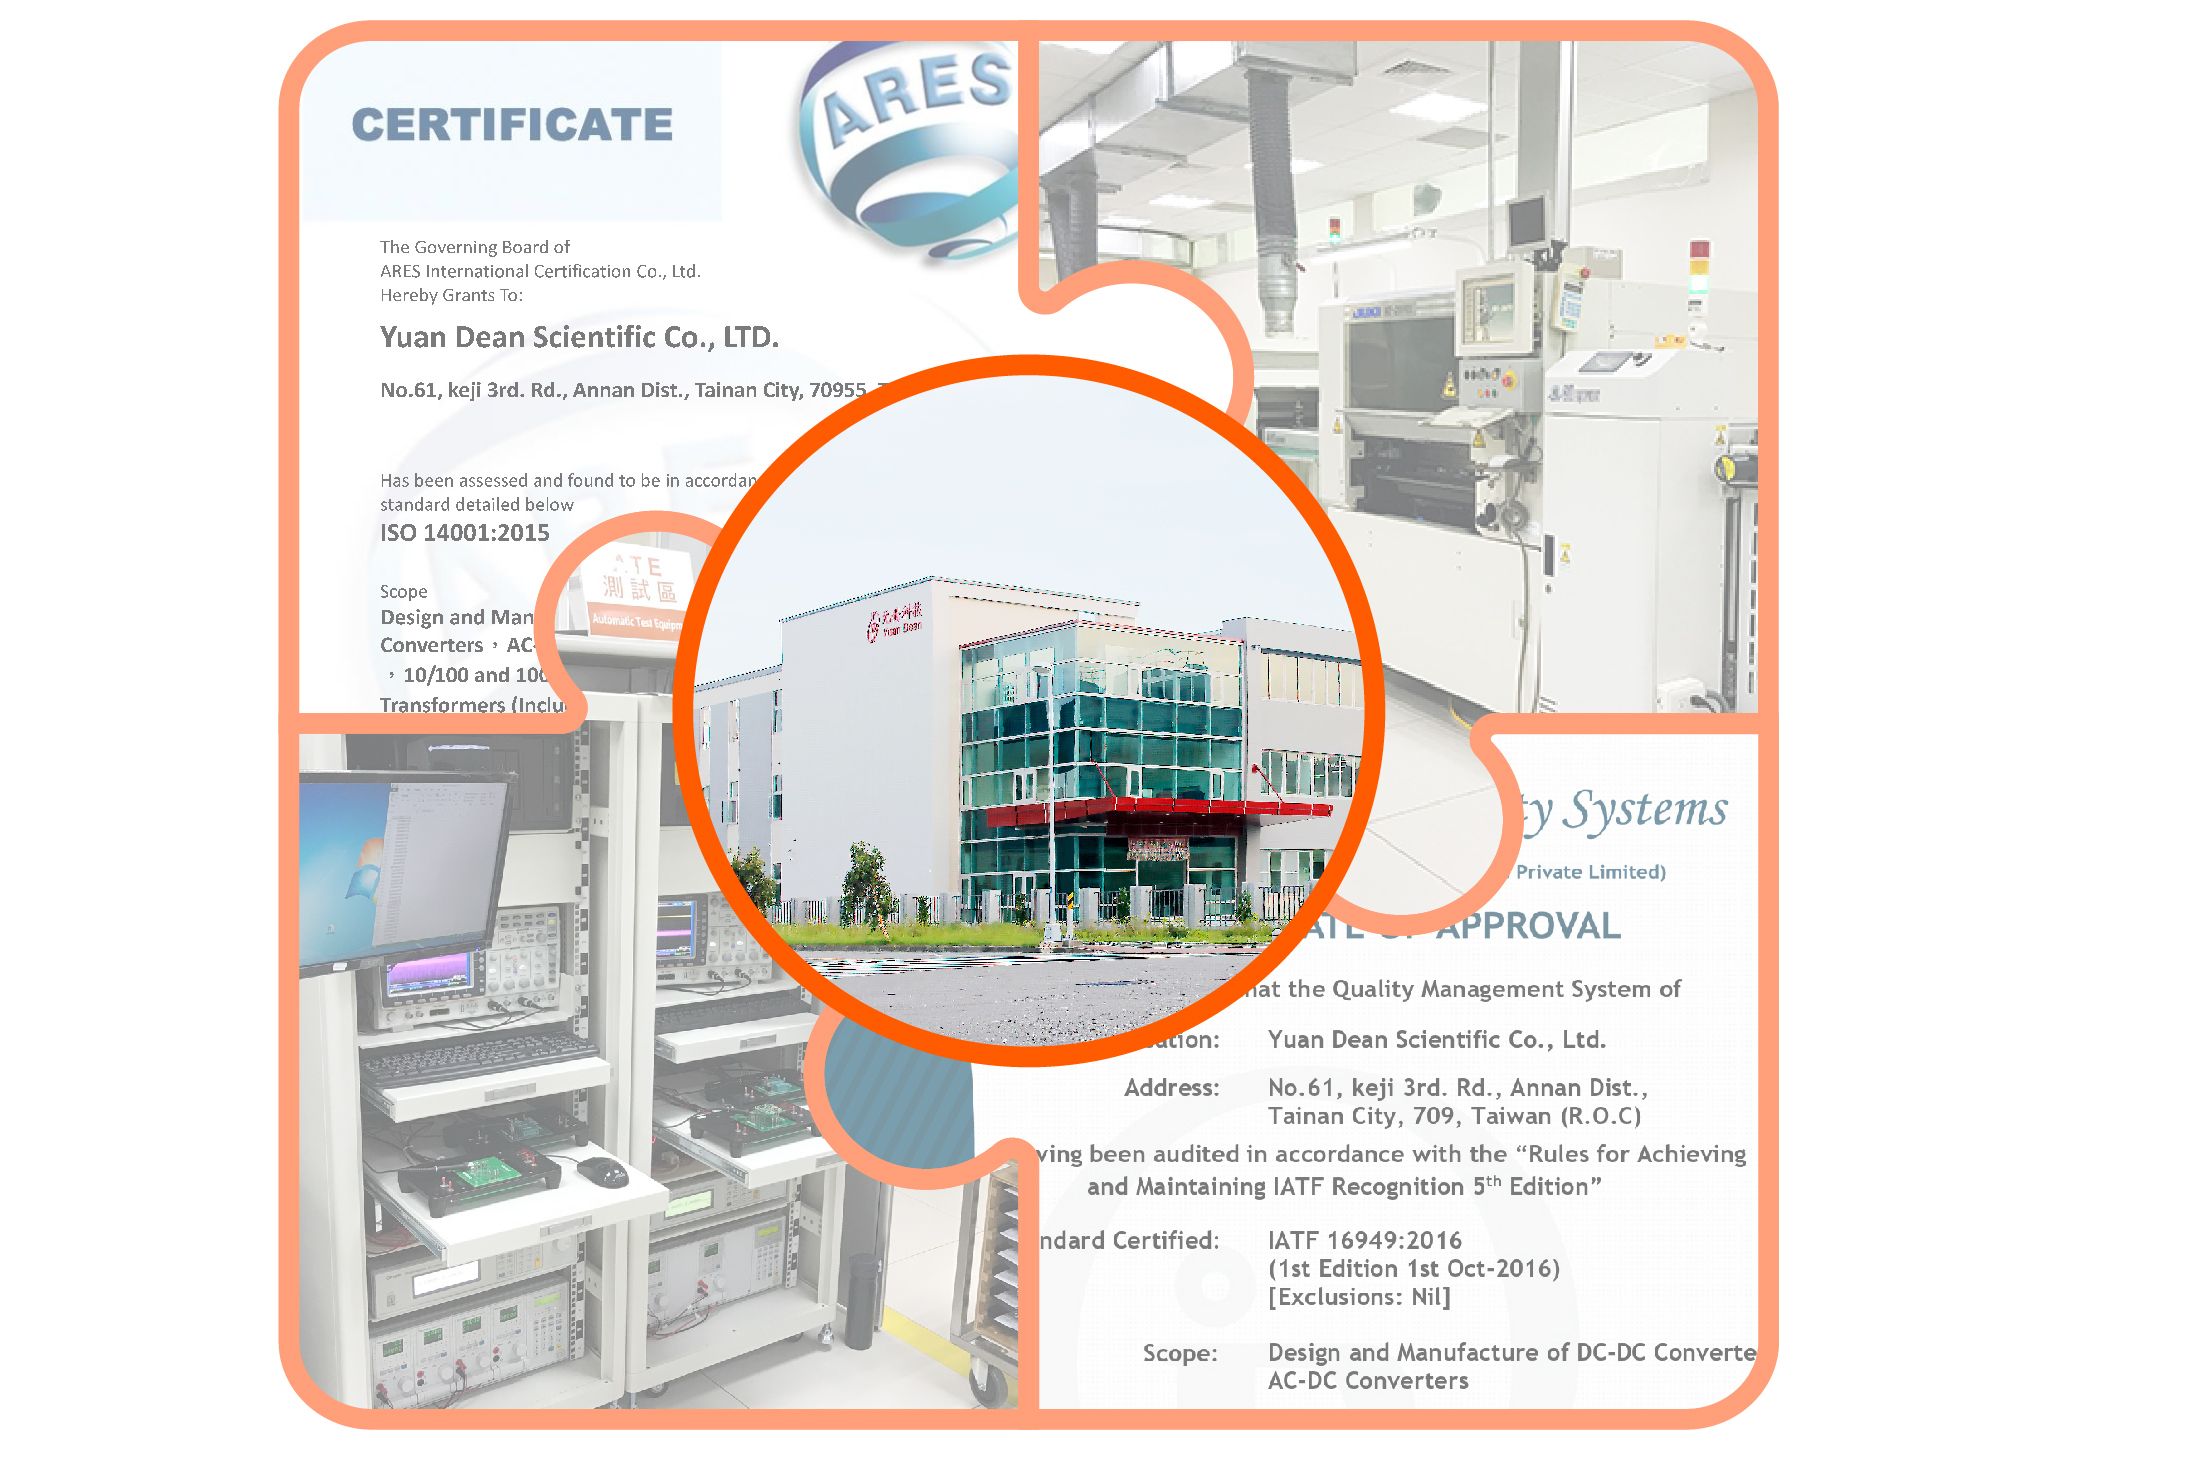 YUAN DEAN के इलेक्ट्रॉनिक कंपोनेंट्स ने विभिन्न प्रमाणीकरण पास किए हैं।